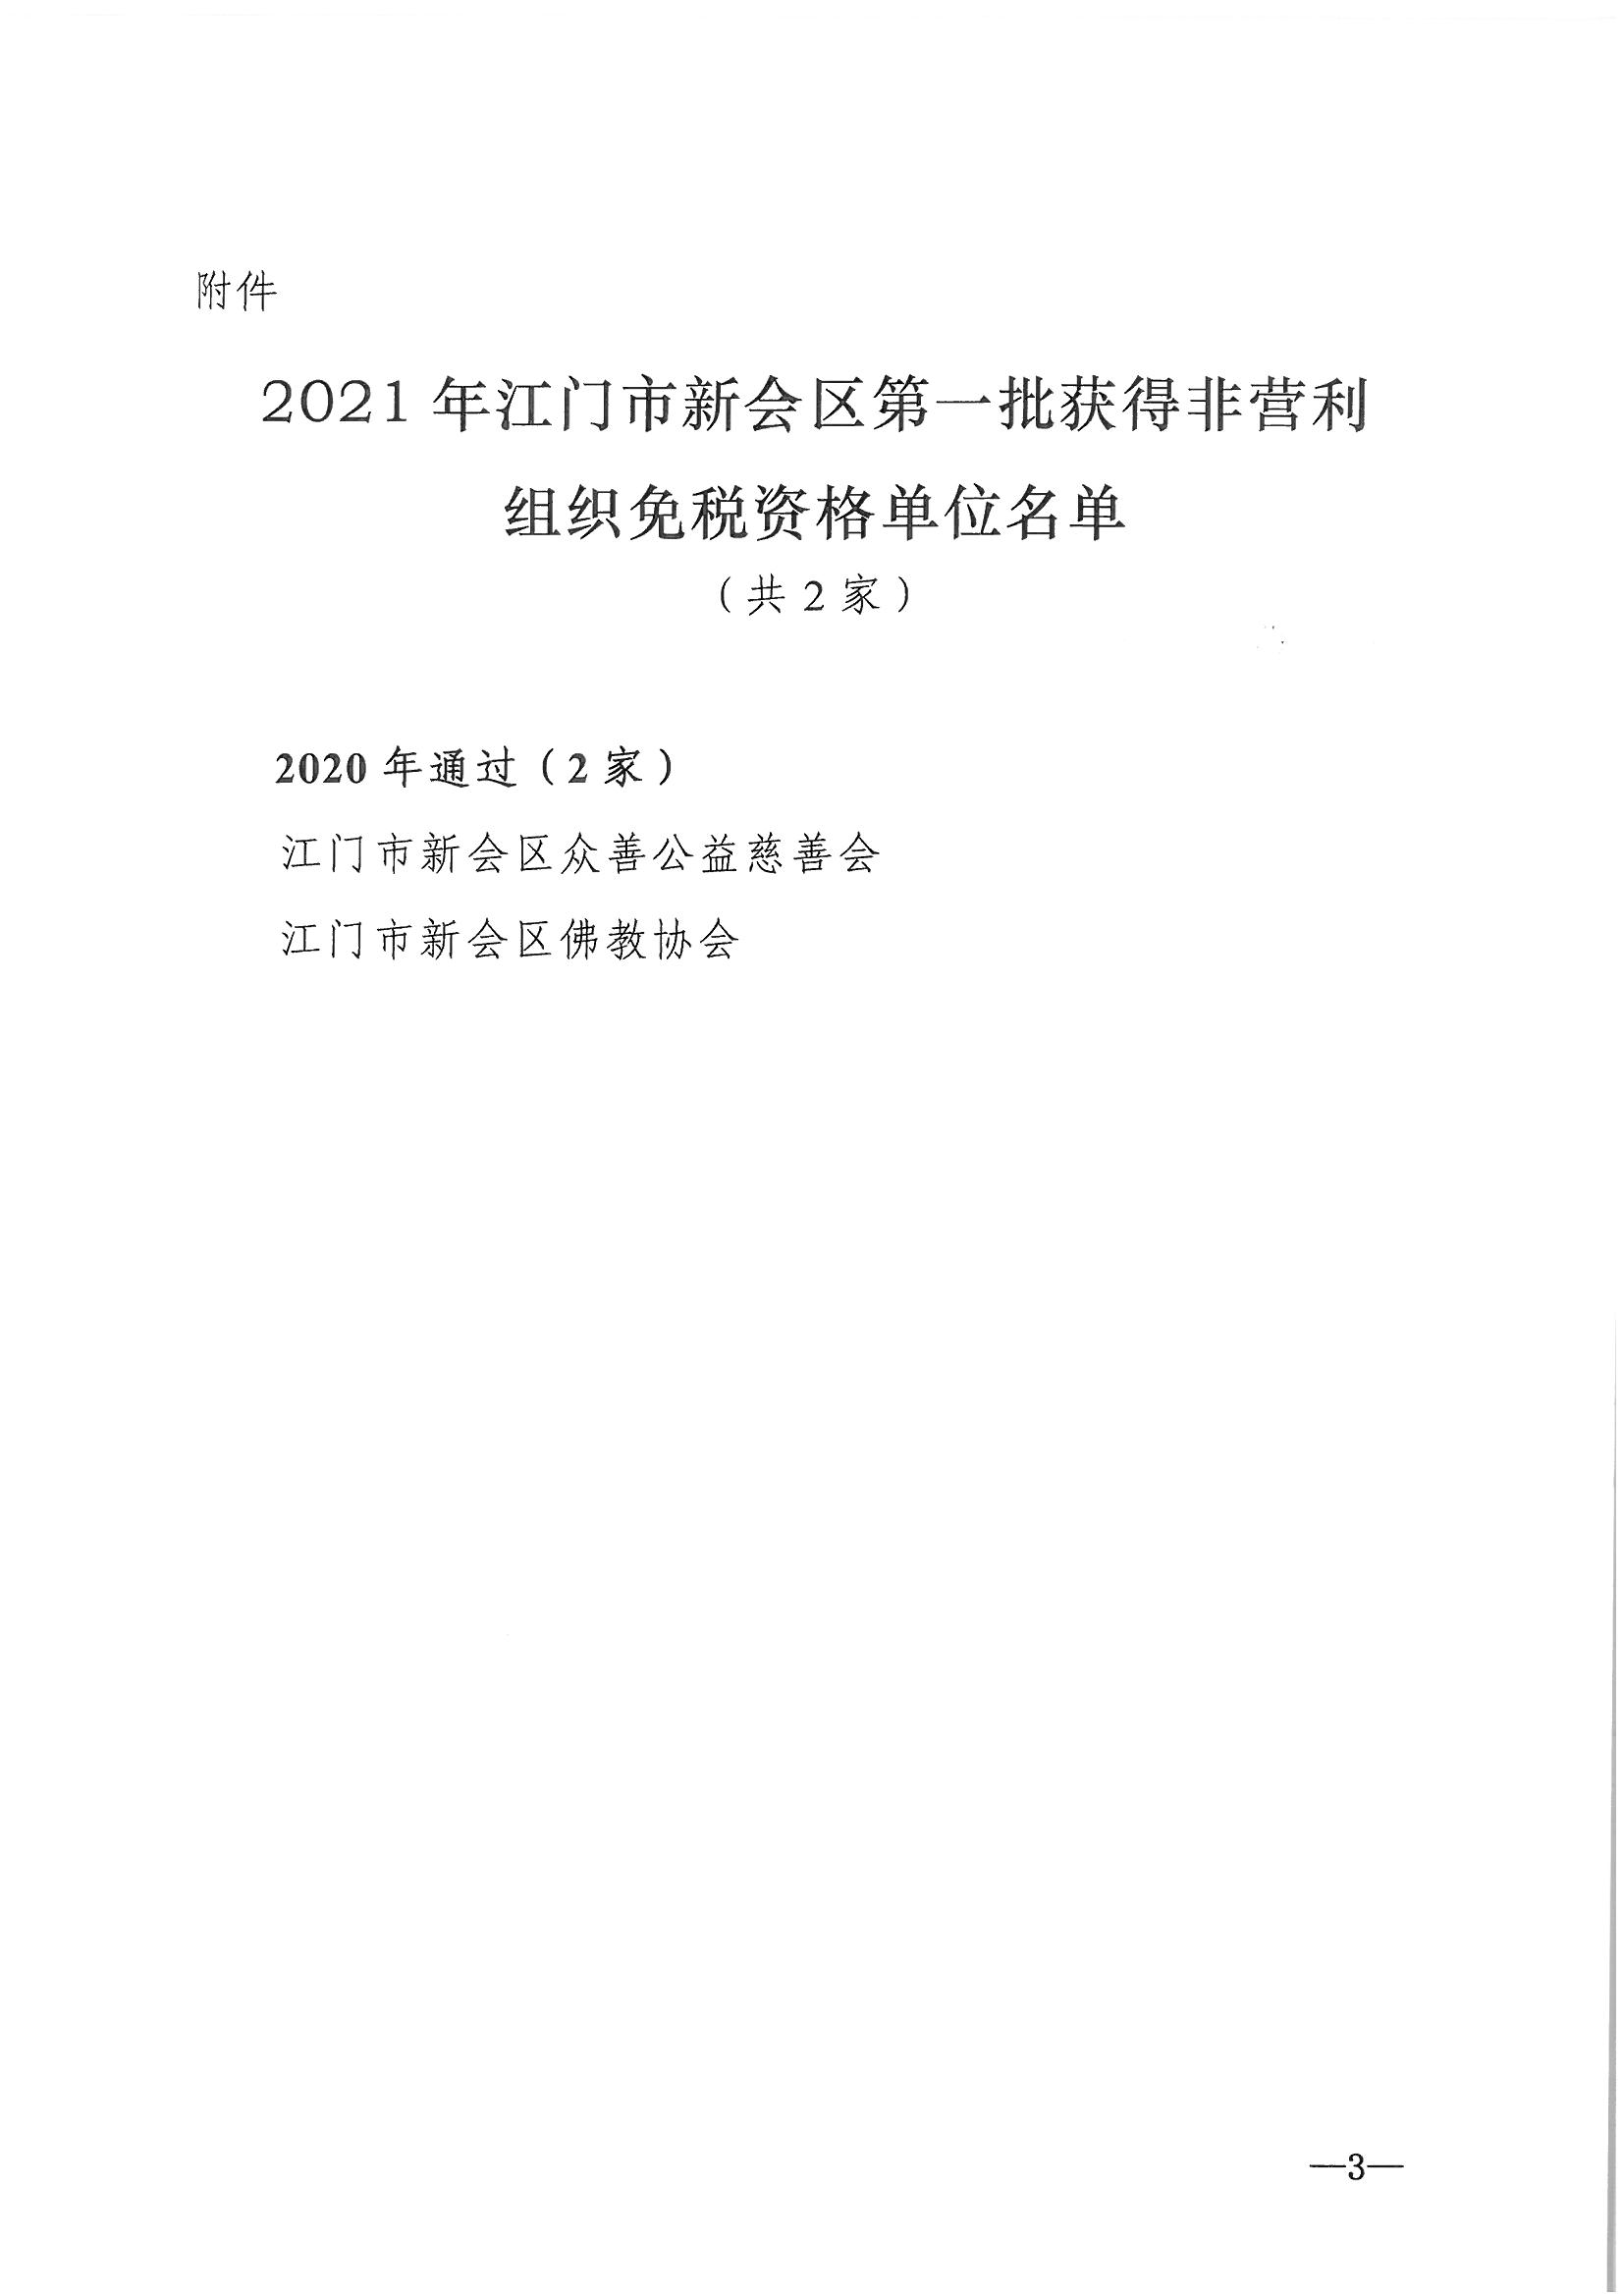 发文__新财法【2021】2号__关于2021年江门市新会区第一批获得非营利组织免税资格单位名单的公告_页面_3.jpg